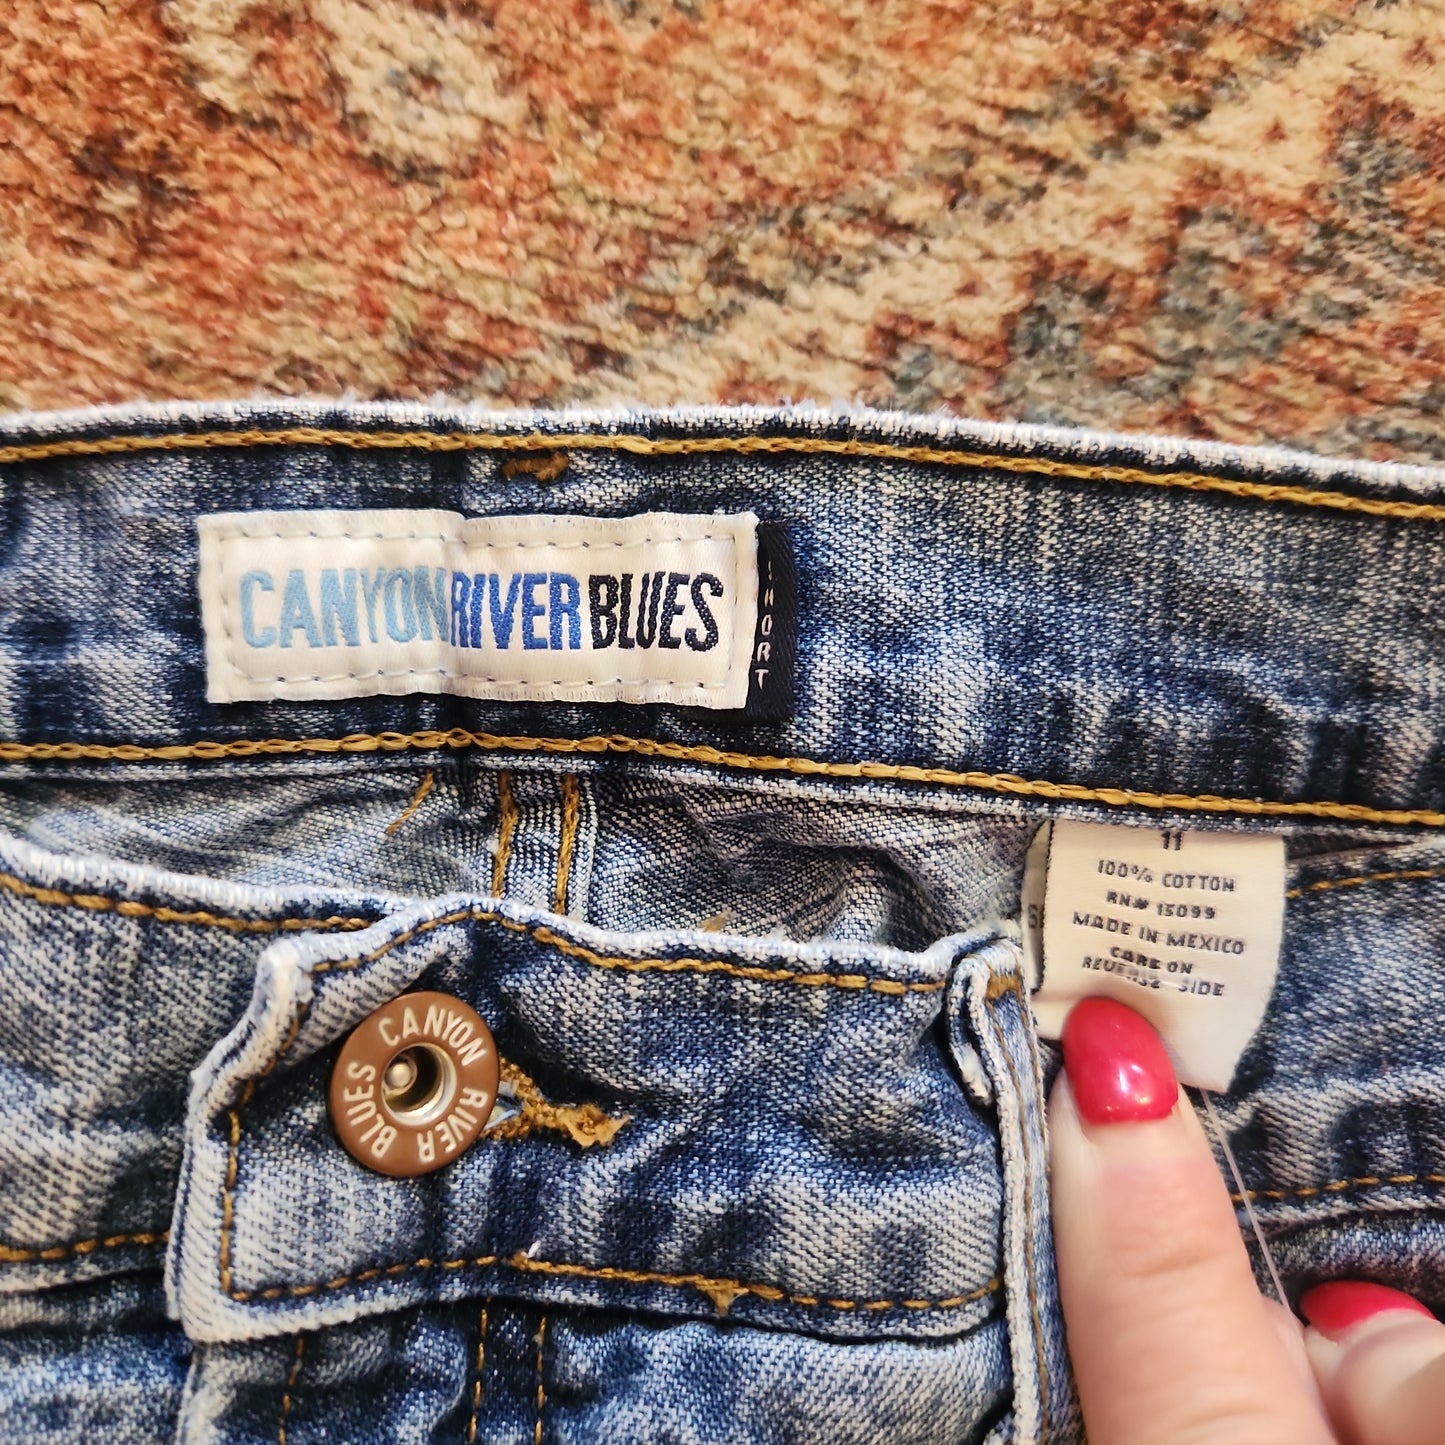 Canyon River Blues jeans